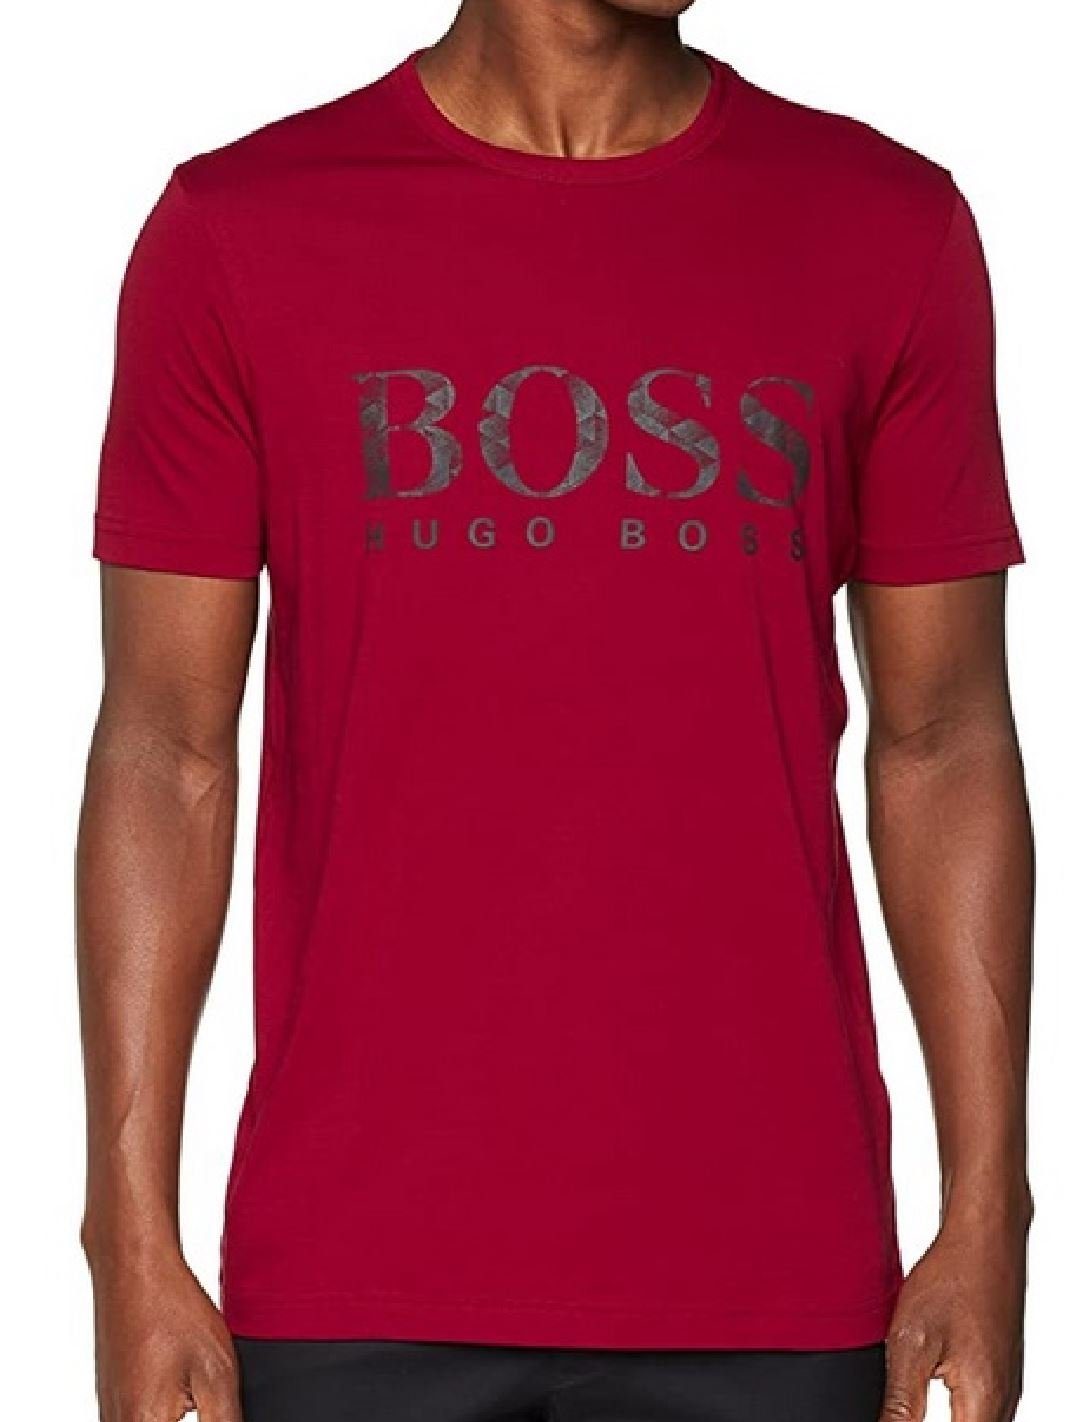 Tee4 T-Shirt Boss BOSS T-Shirt rot Hugo